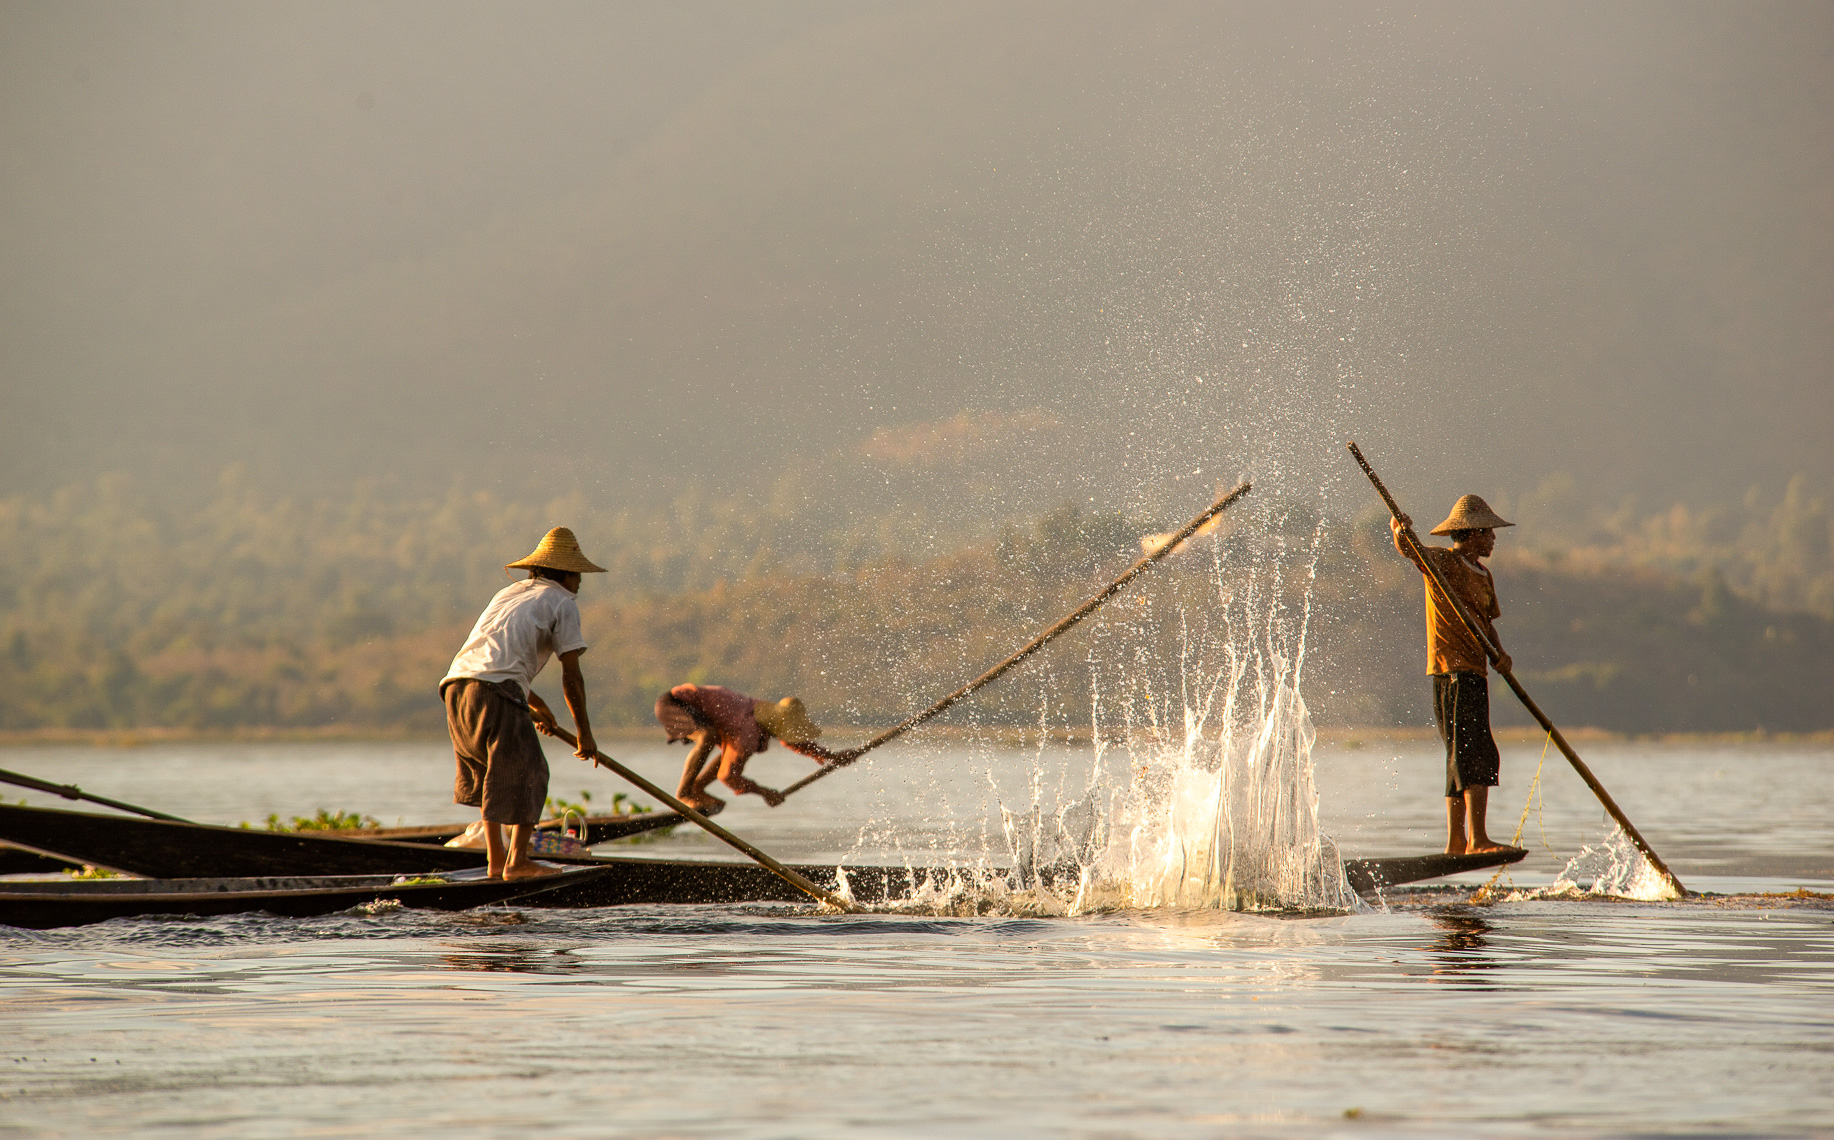 TP_1-57. Scaring up Fish.  Inlay Lake, Myanmar